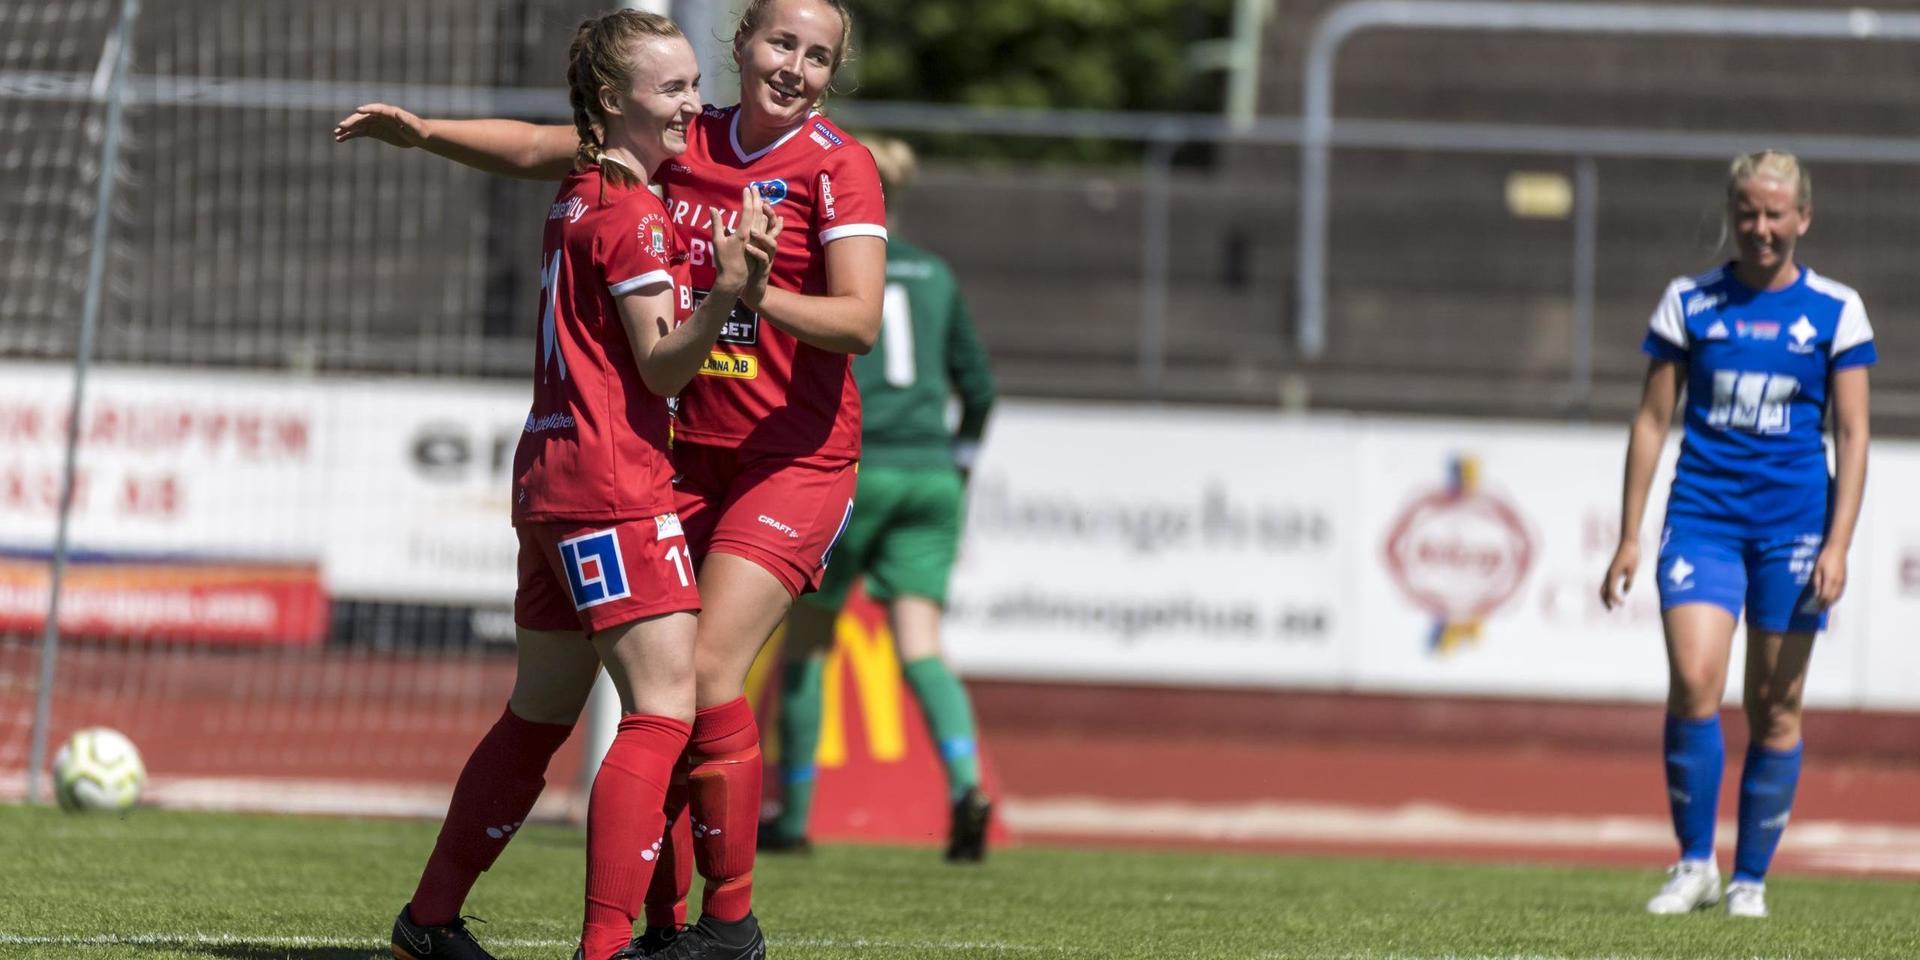 IFK Norrköping väntar Rössö i ett eventuellt kval till Elitettan. Då måste startspelare som Jennifer Davidsson och Stella Ullberg leverera om Uddevallalaget ska lyckas ta klivet upp till svensk elitfotboll.